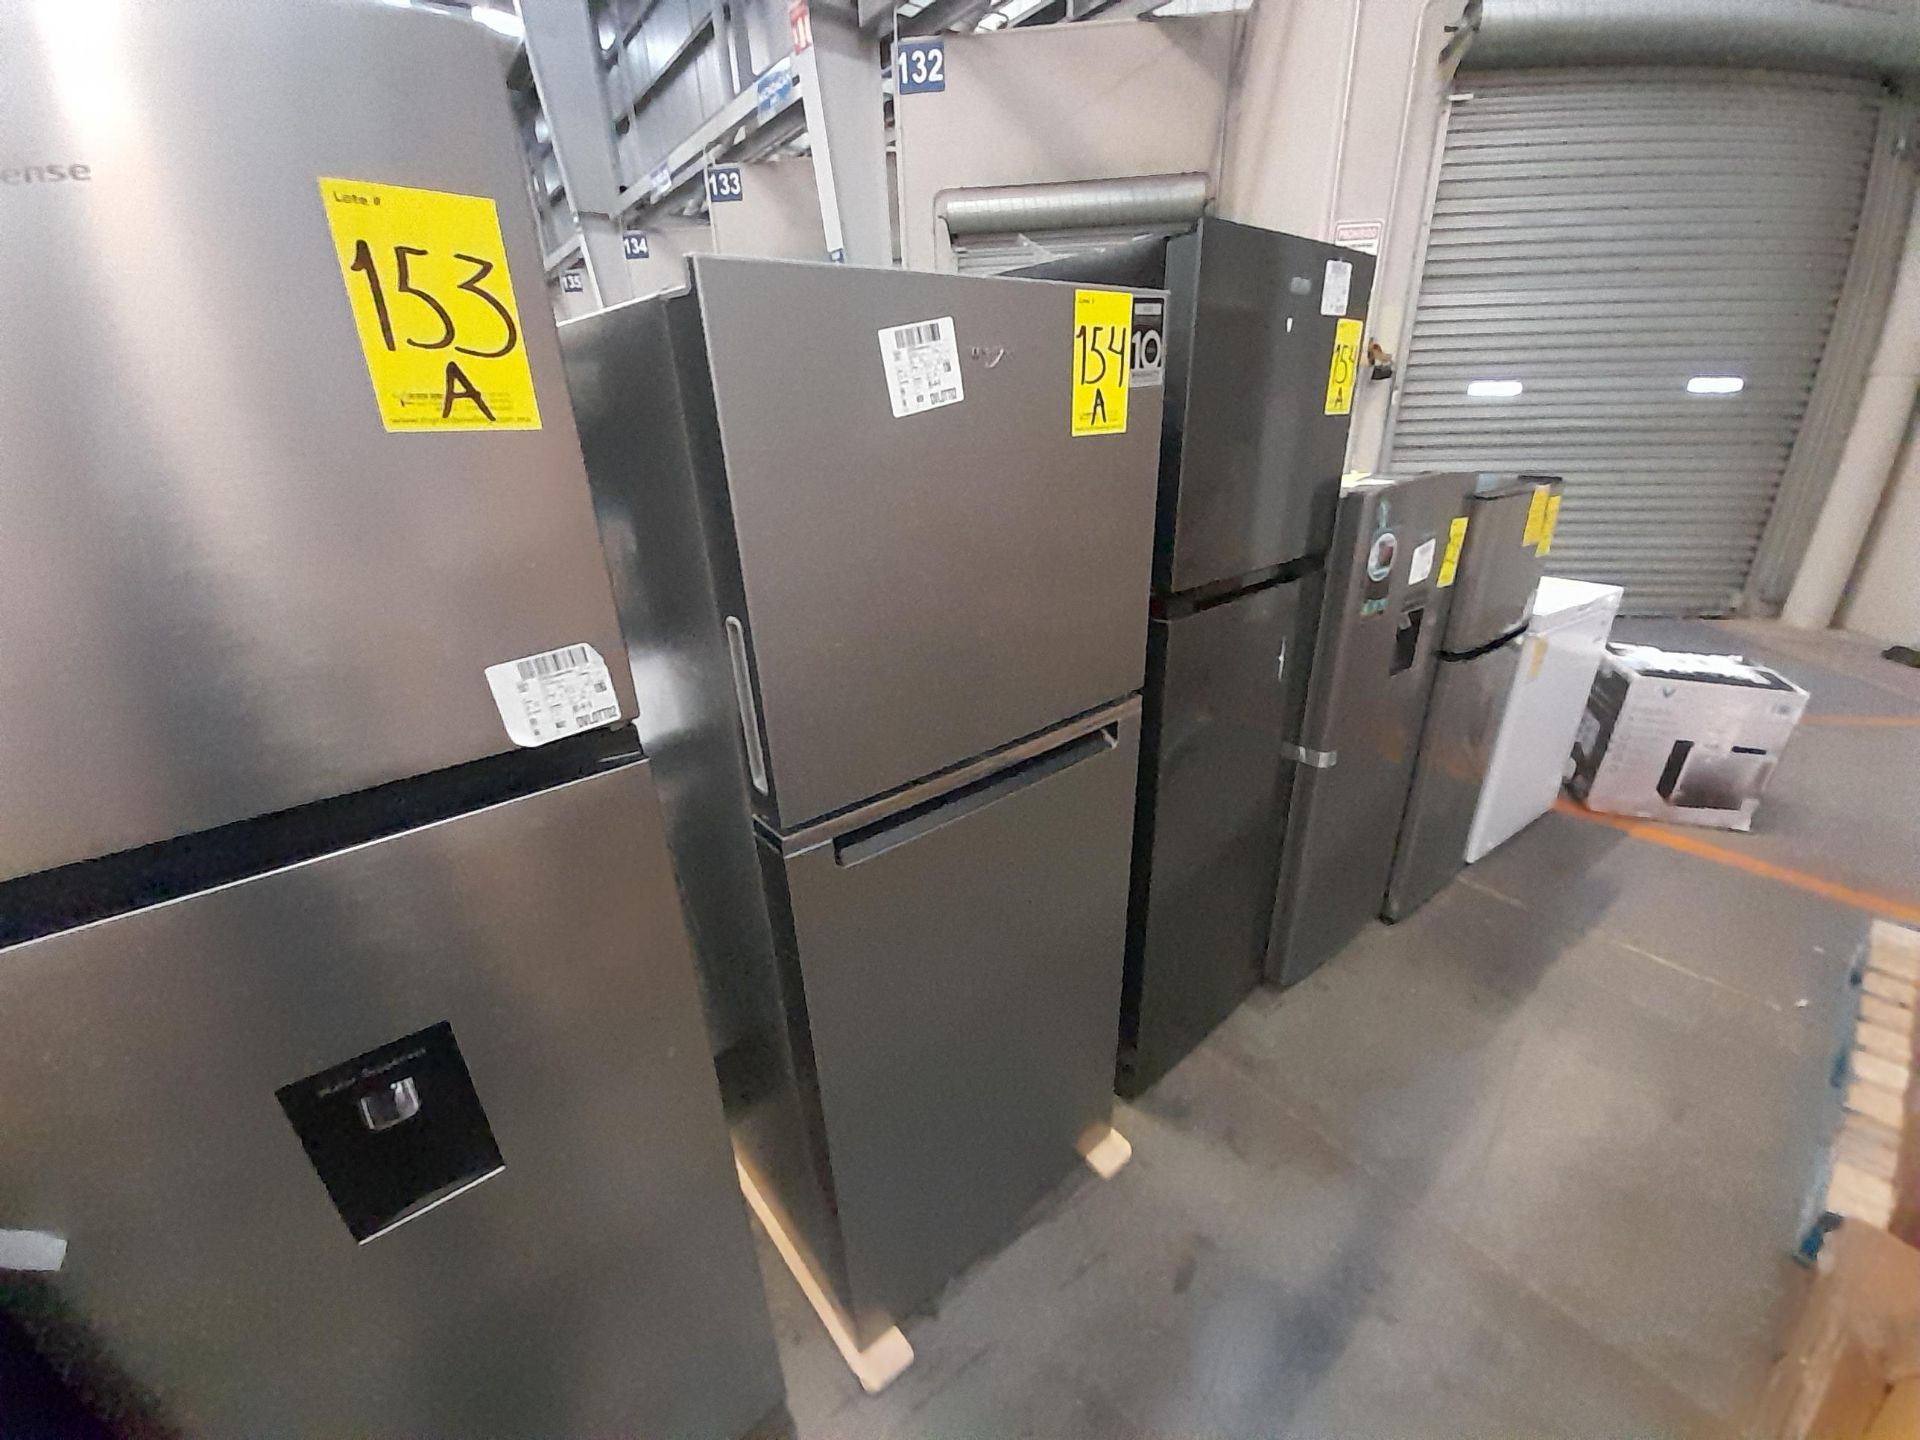 Lote de 2 refrigeradores contiene: 1 refrigerador Marca WHIRPOOL, Modelo WT1230K, Serie ND, Color G - Image 2 of 8